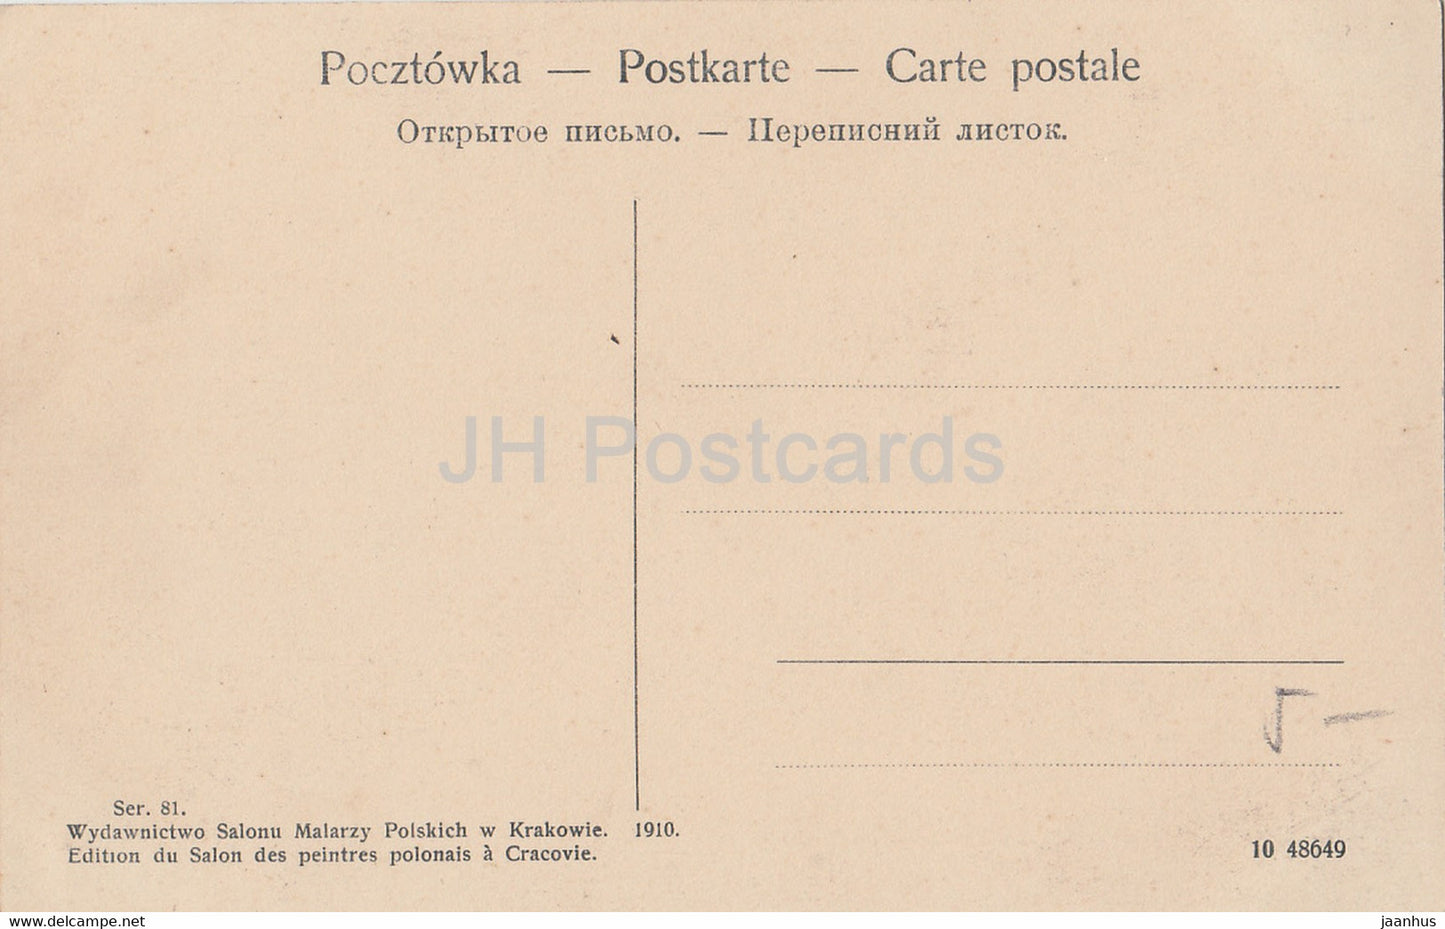 Pont ferroviaire - train - Ser 81 - carte postale ancienne - 1910 - Pologne - inutilisé